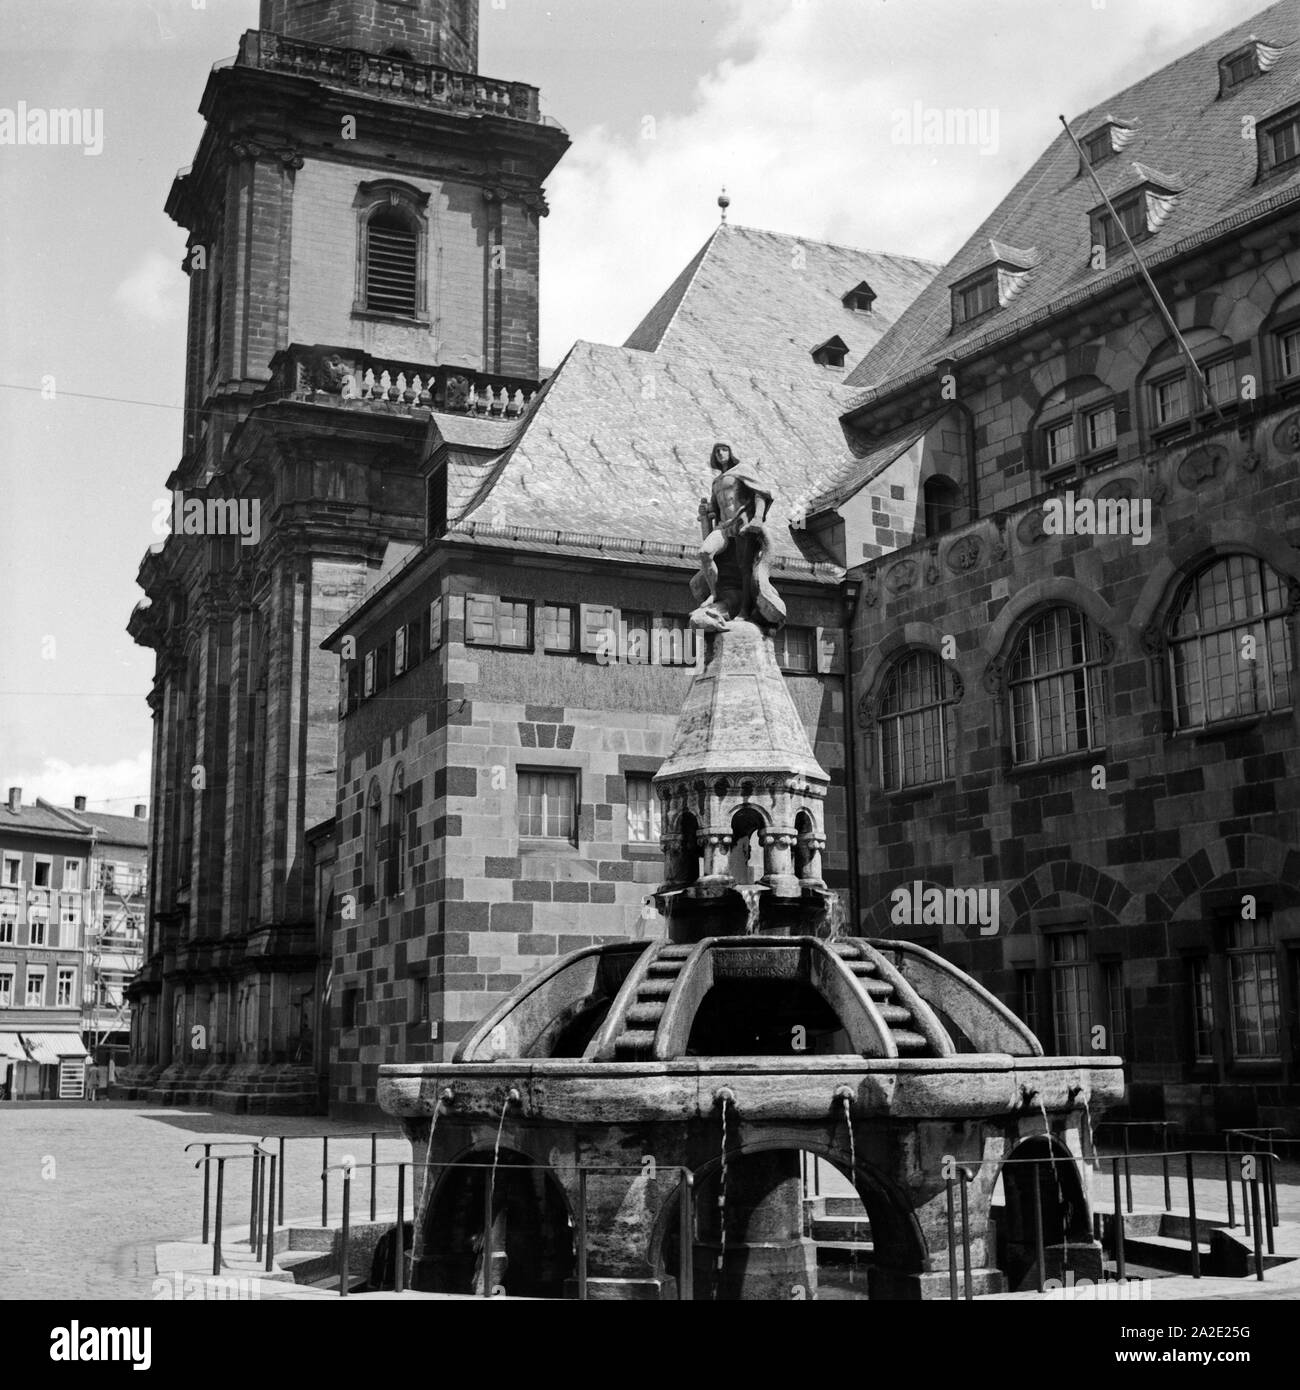 Brunnen an der Dreifaltigkeitskirche in Worms, Deutschland 1930s. Fontana nella chiesa della trinità a Worms, Germania 1930s. Foto Stock